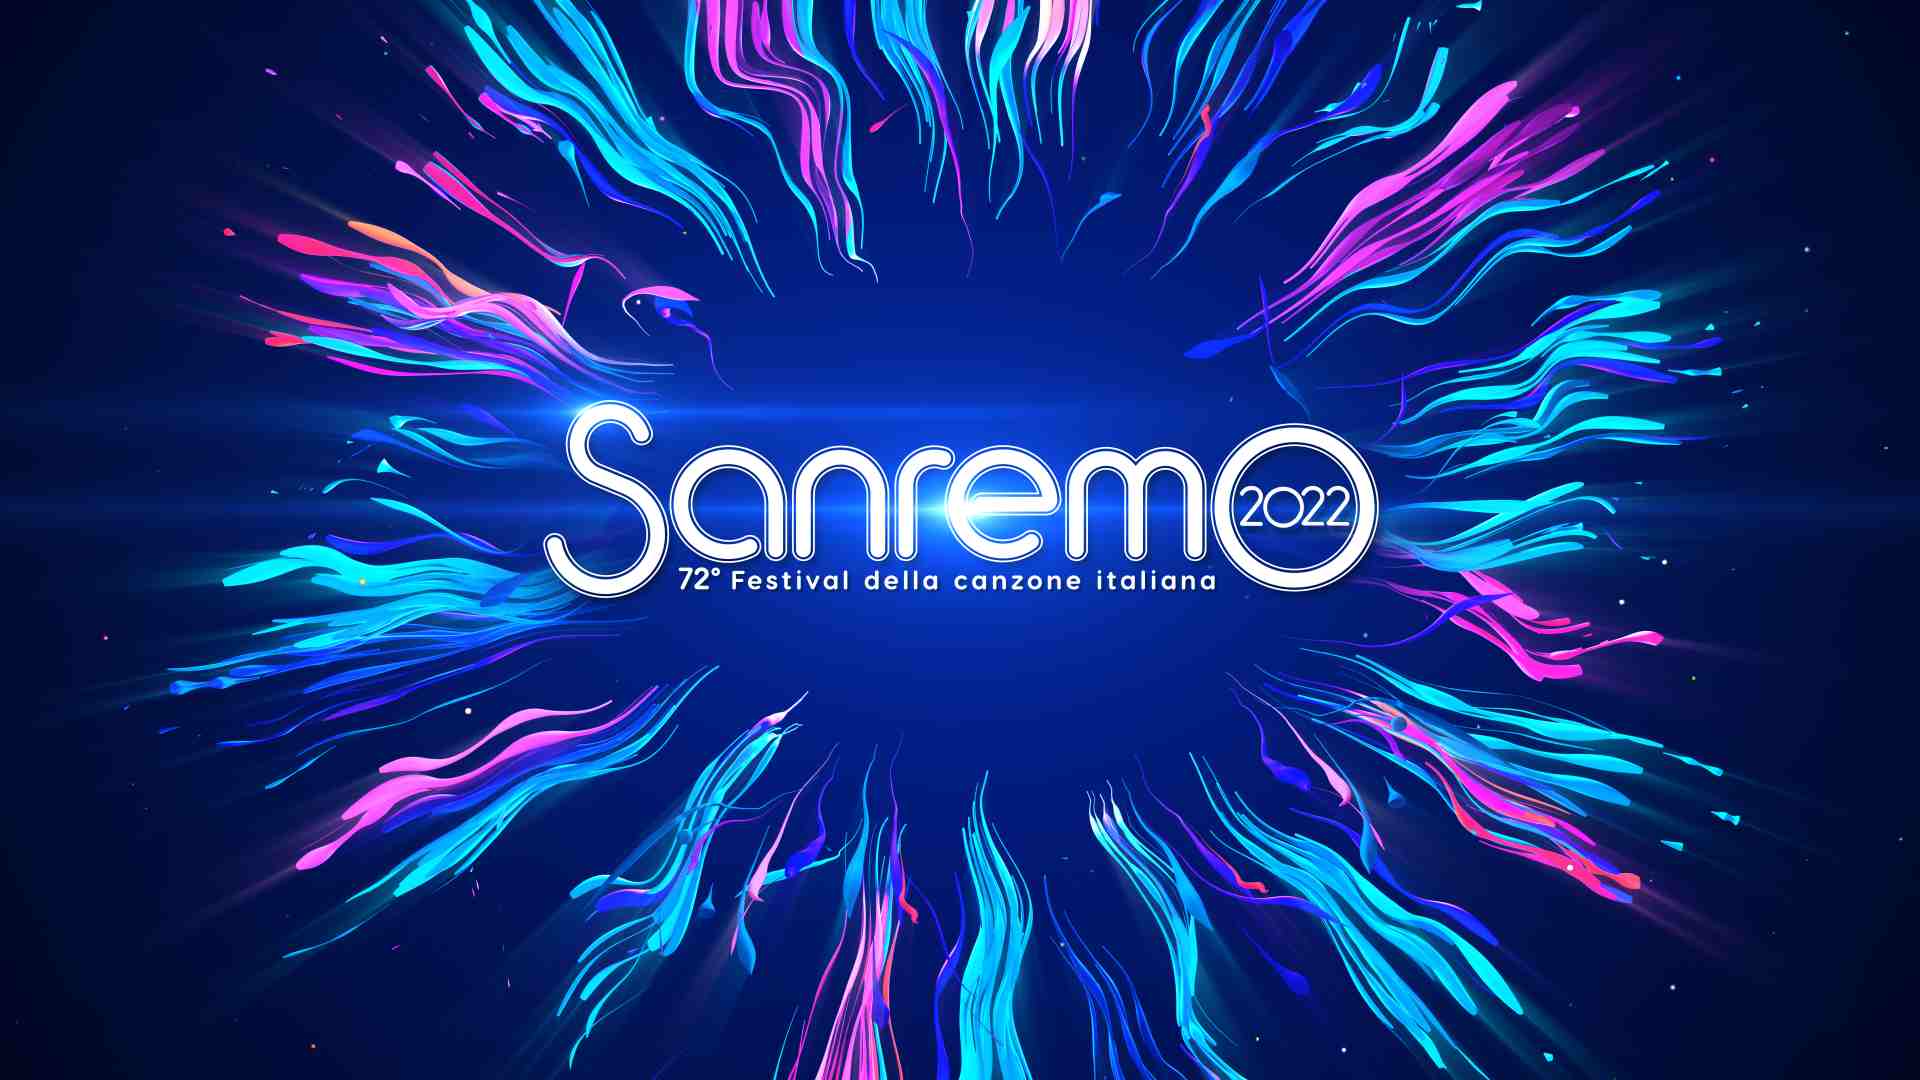 Le canzoni scelte per la serata cover di Sanremo 2022 thumbnail